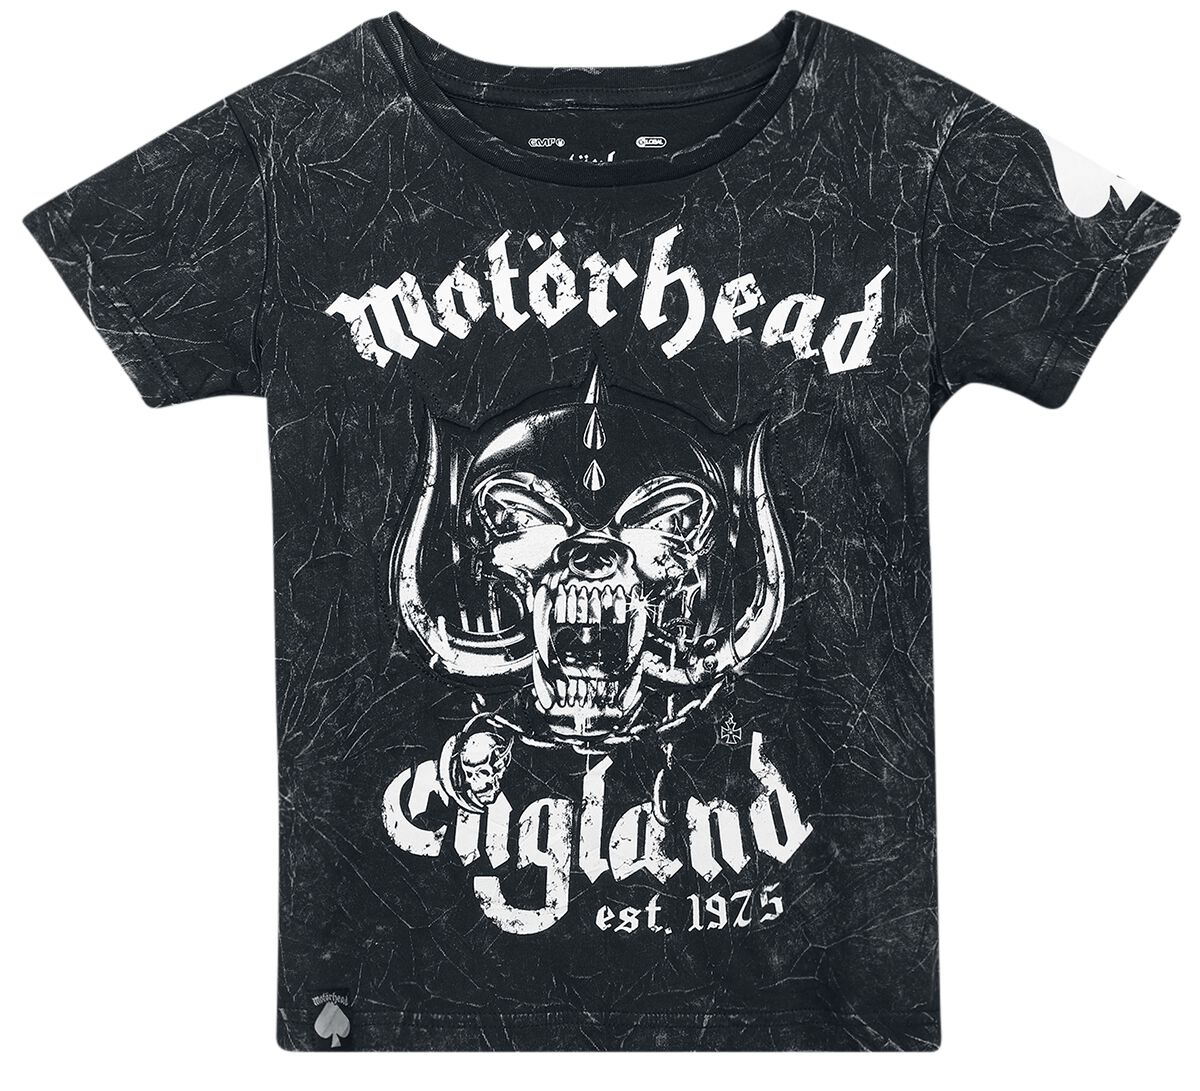 Motörhead T-Shirt für Kinder - Kids - EMP Signature Collection - für Mädchen & Jungen - dunkelgrau  - EMP exklusives Merchandise!